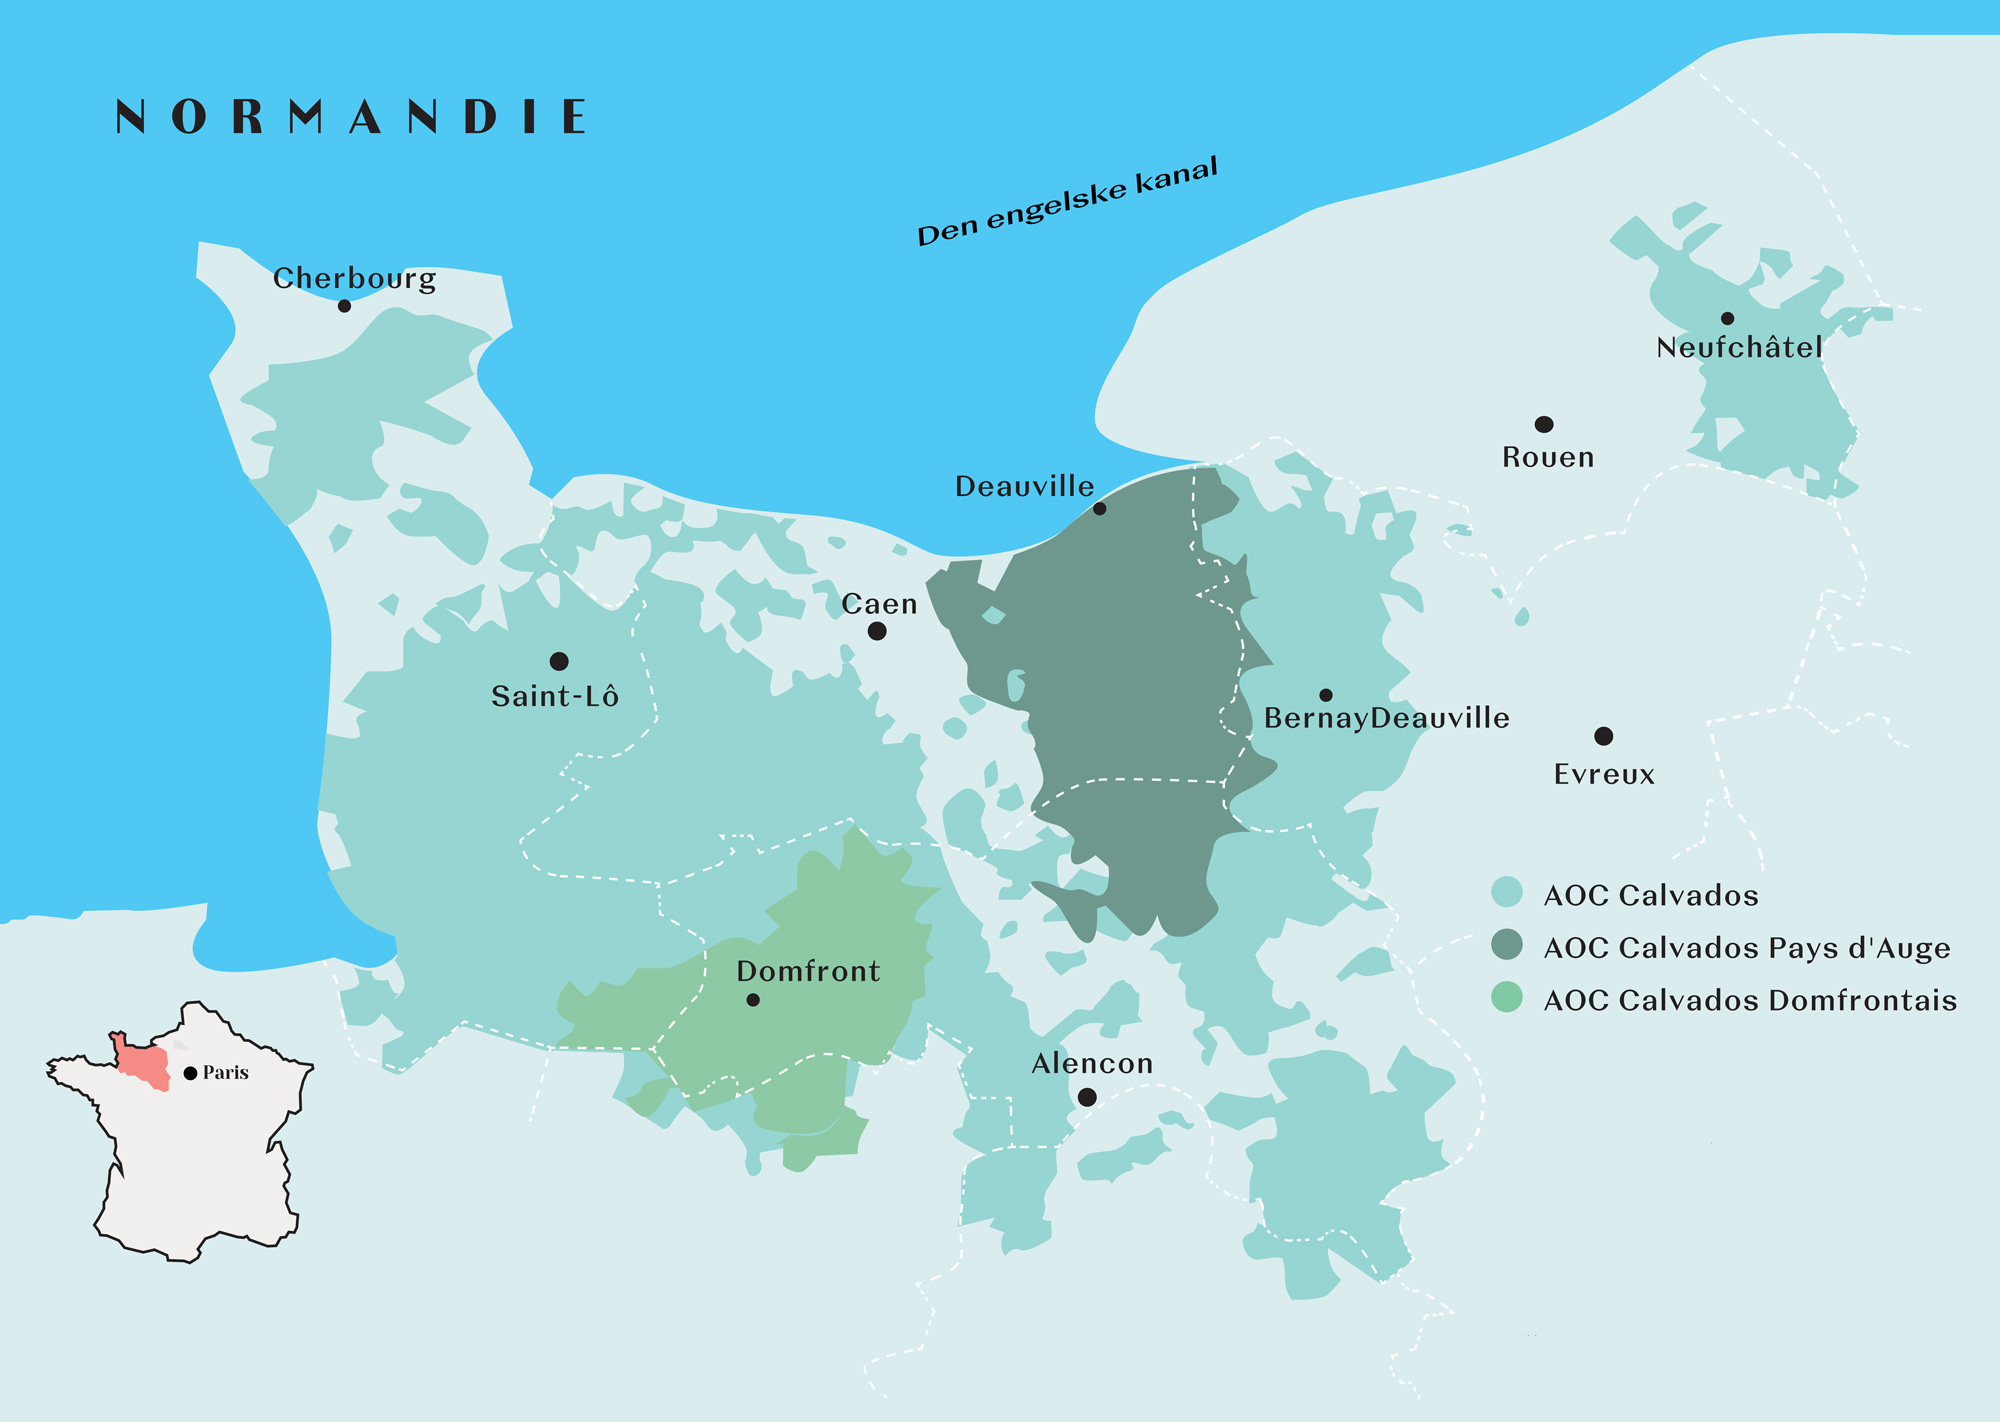 Kart over Normandie med Calvados-områdene.